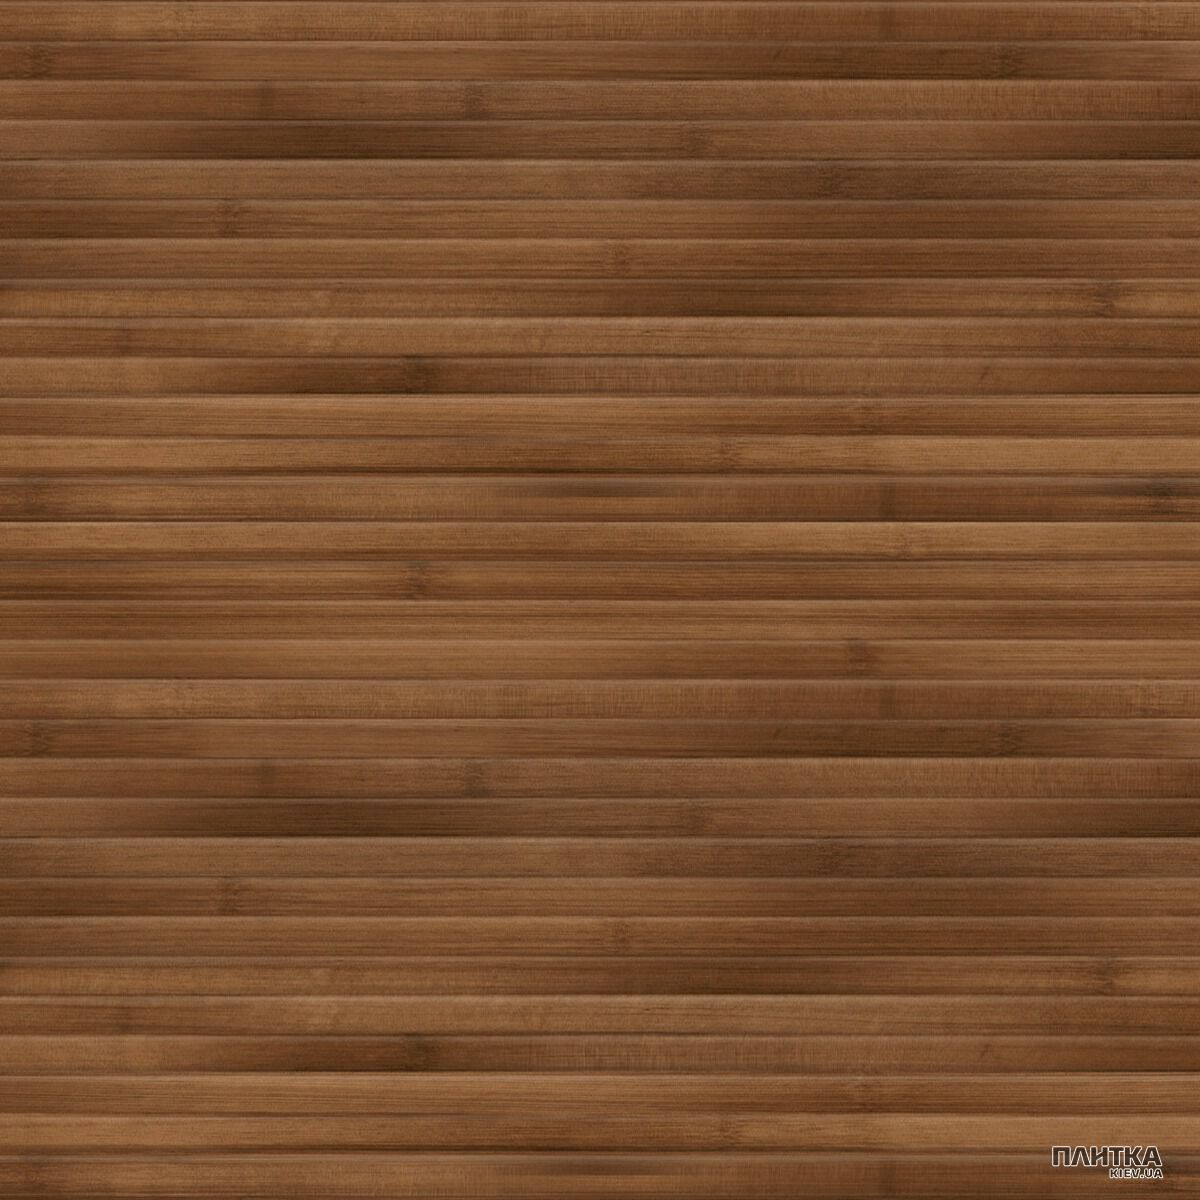 Напольная плитка Golden Tile Bamboo BAMBOO КОРИЧНЕВЫЙ Н77830 коричневый - Фото 1